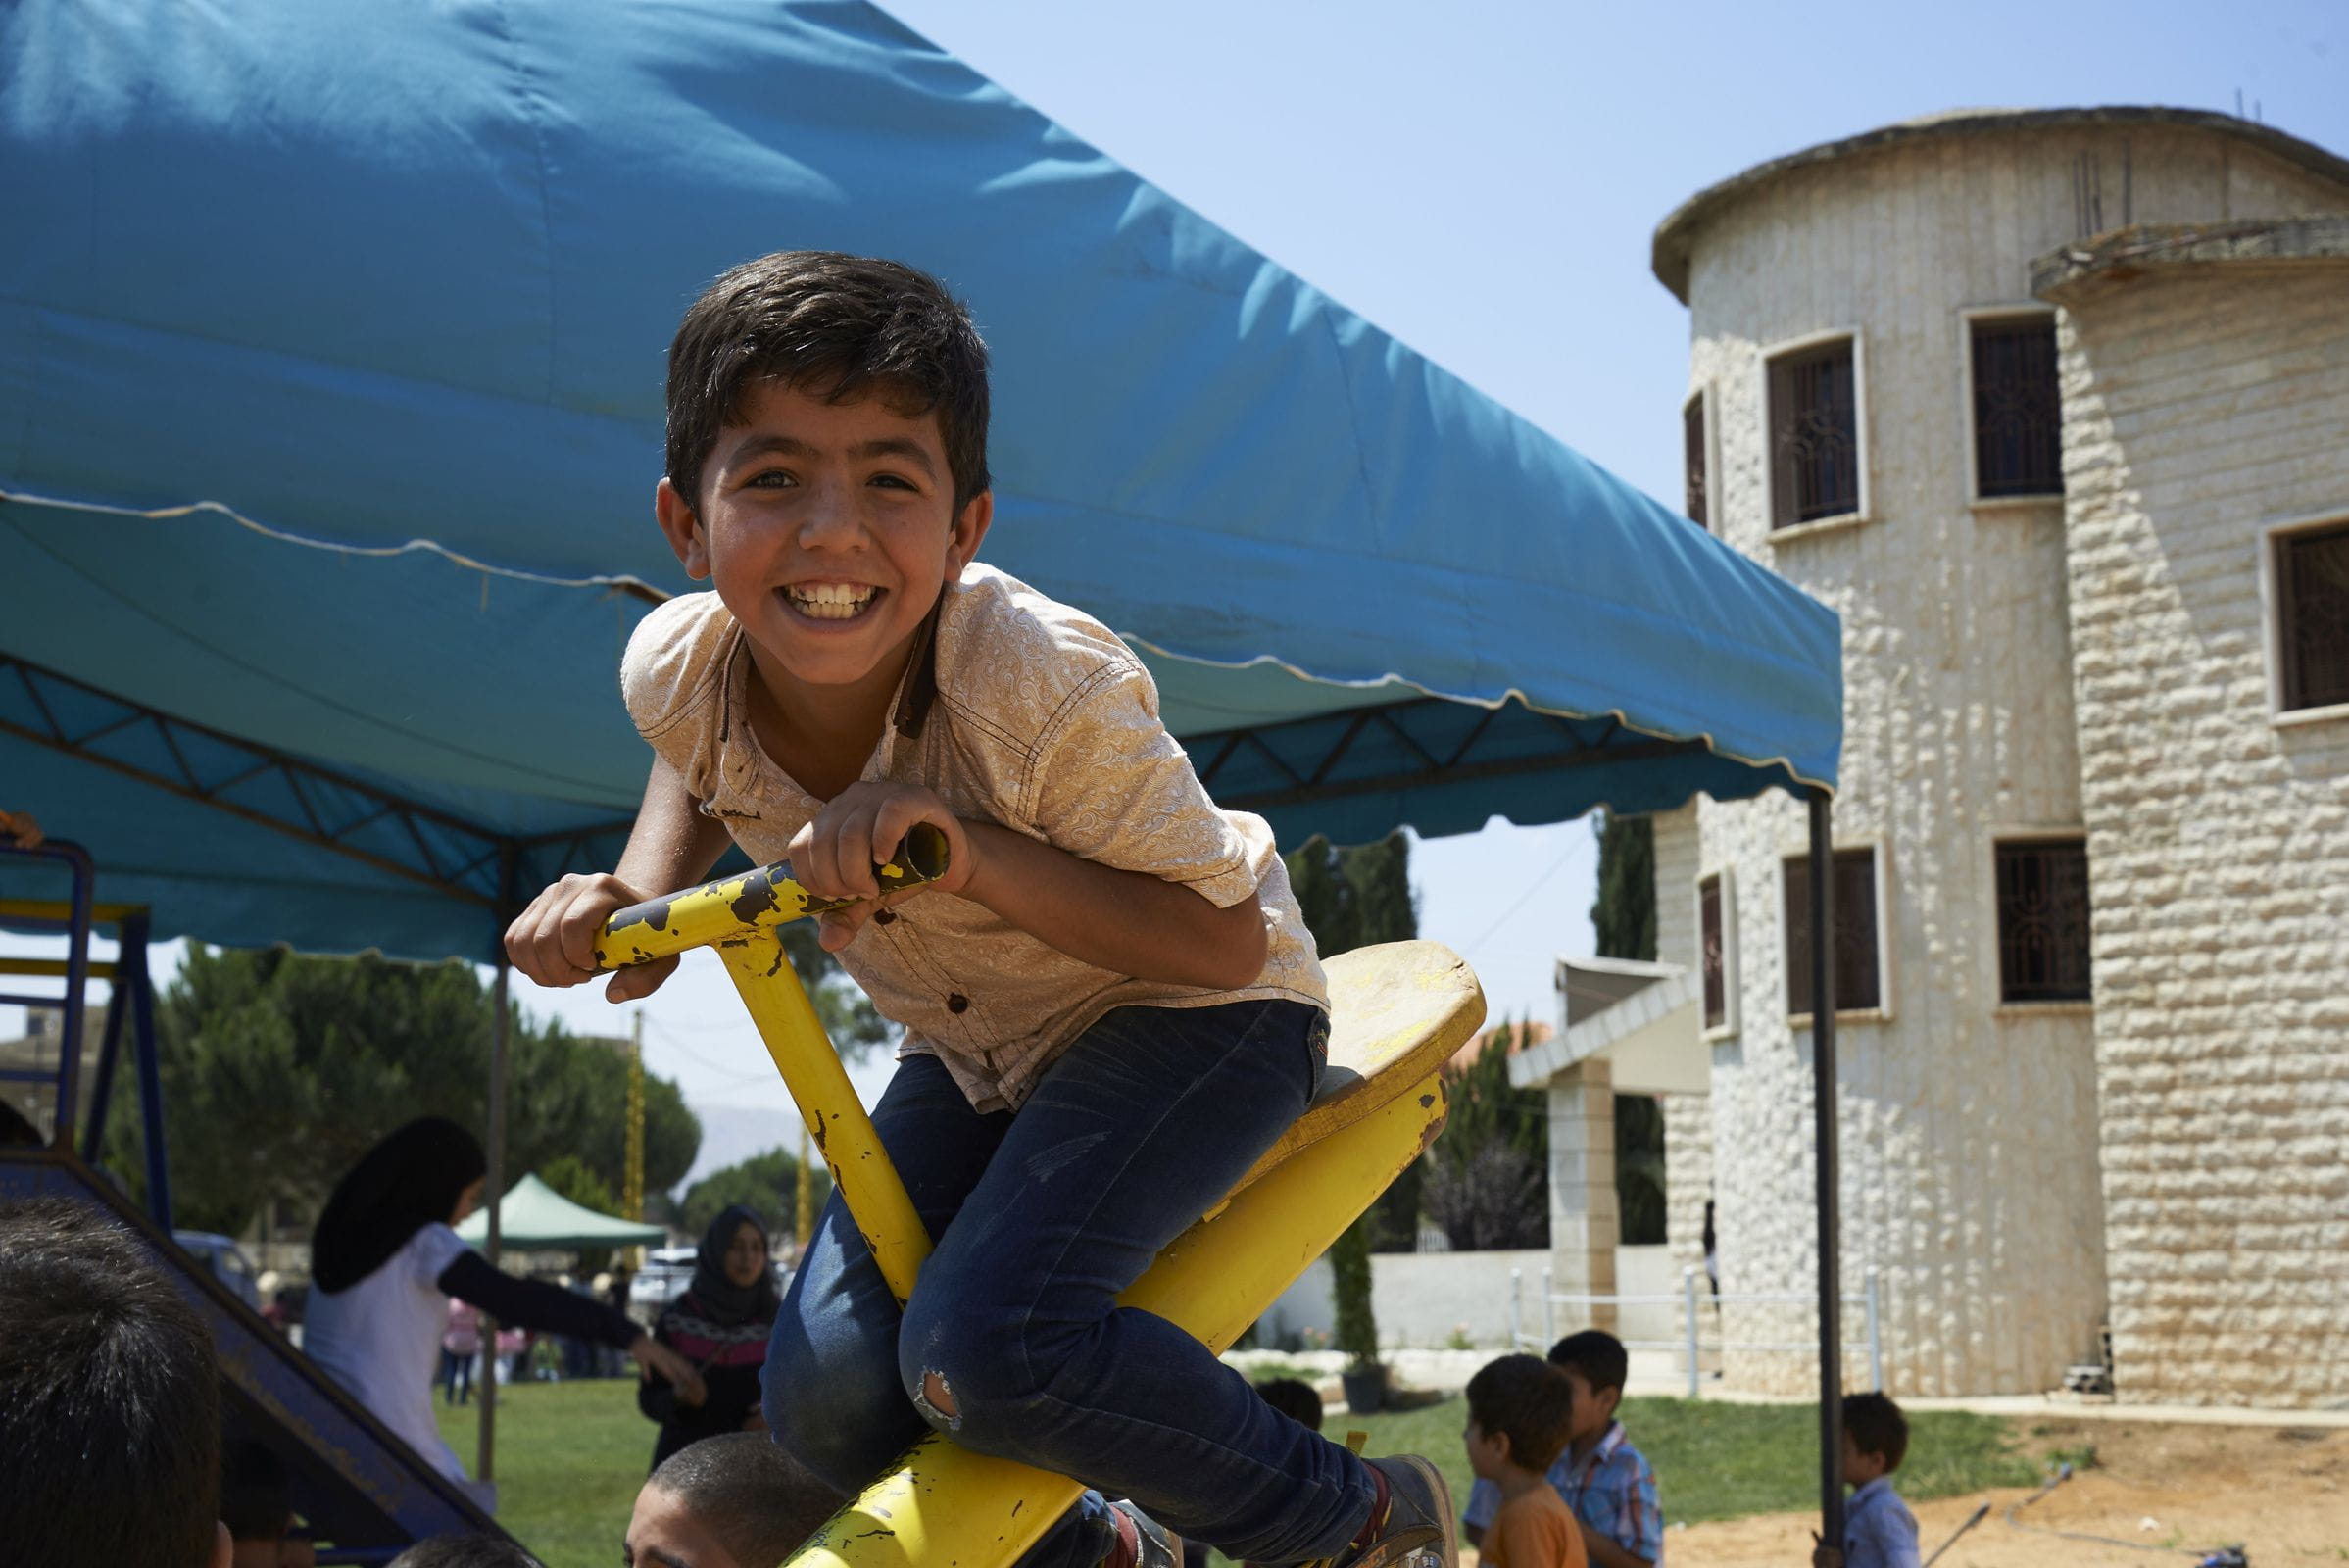 Reportage Libanon; Foto: Kind auf Wippe lacht in die Kamera (Quelle: Ulrich Gernhardt / Kindernothilfe)